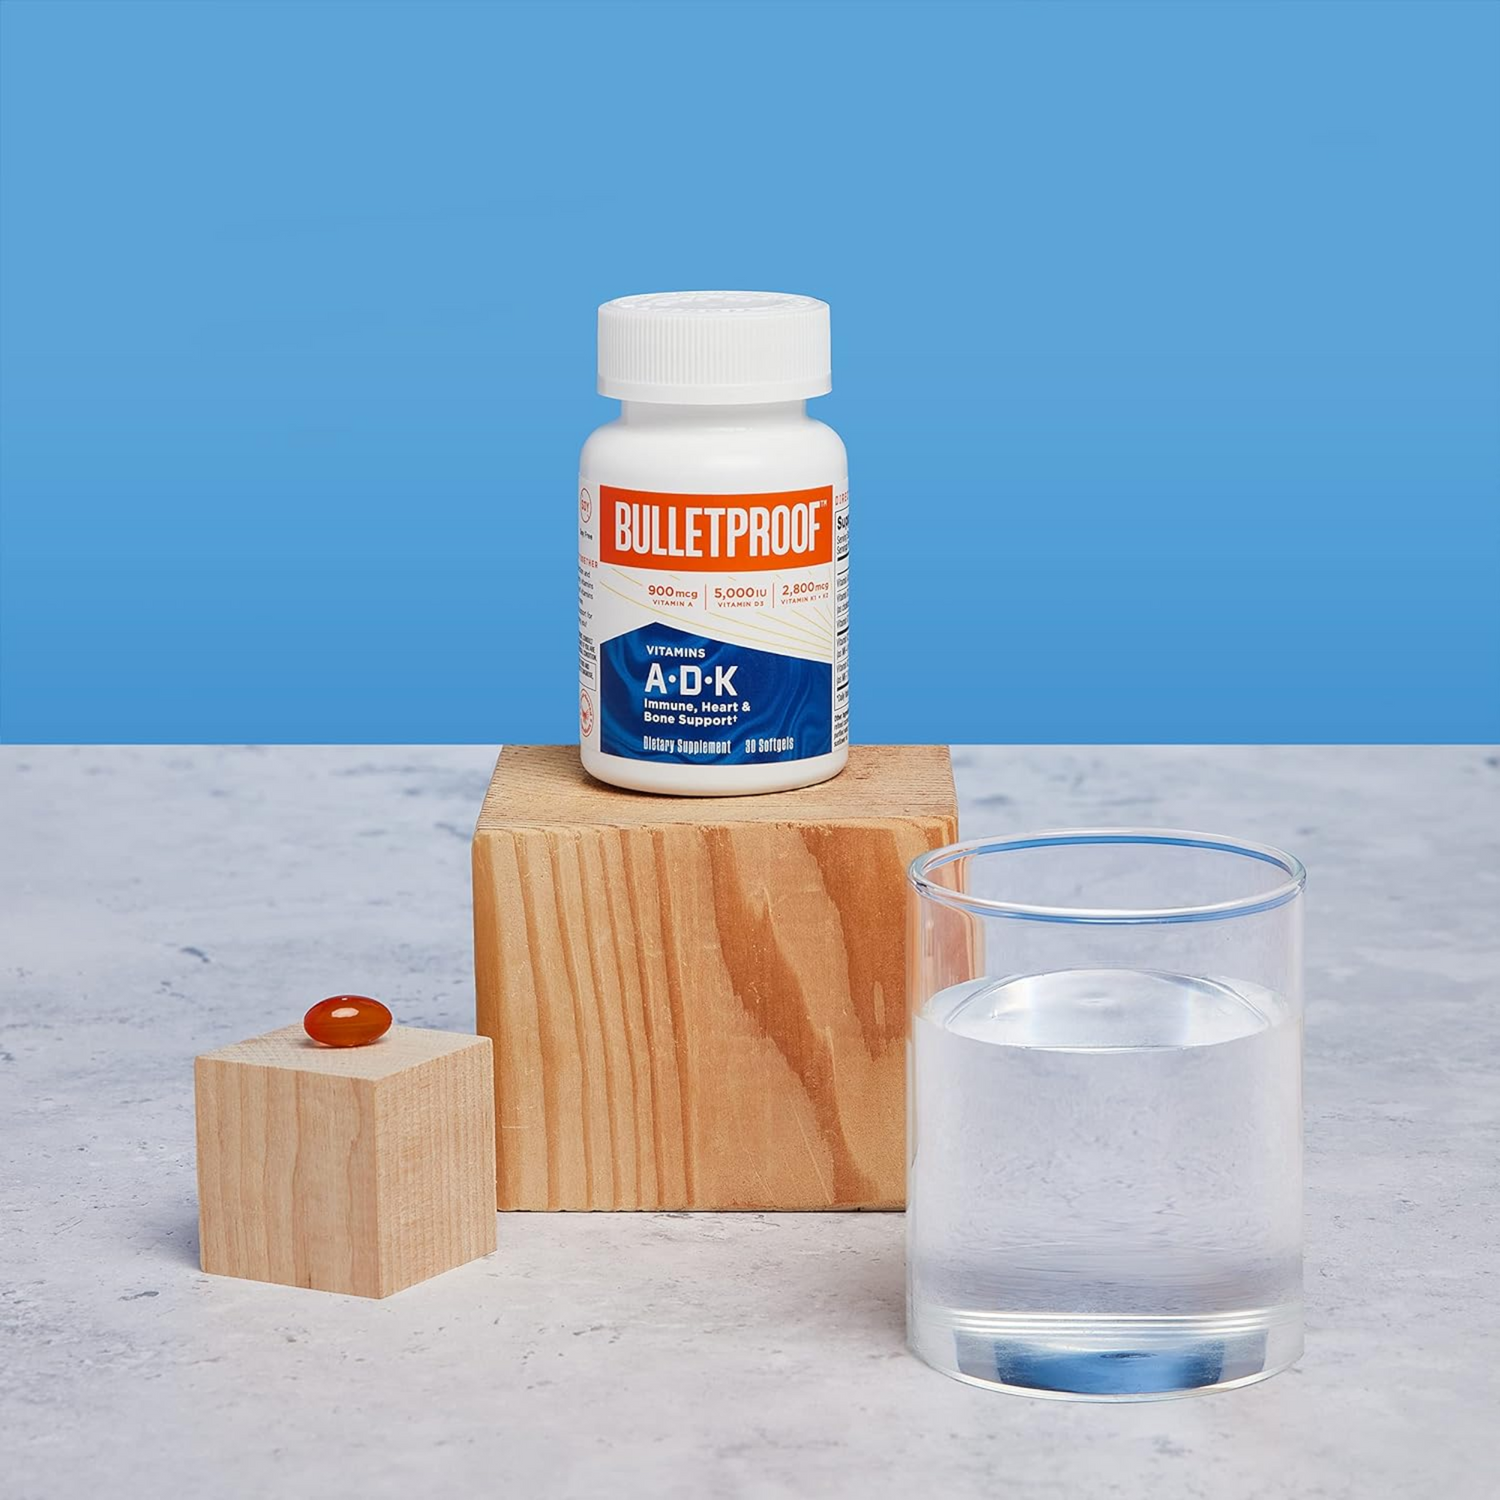 Bulletproof Vitamins A-D-K, 30 CT